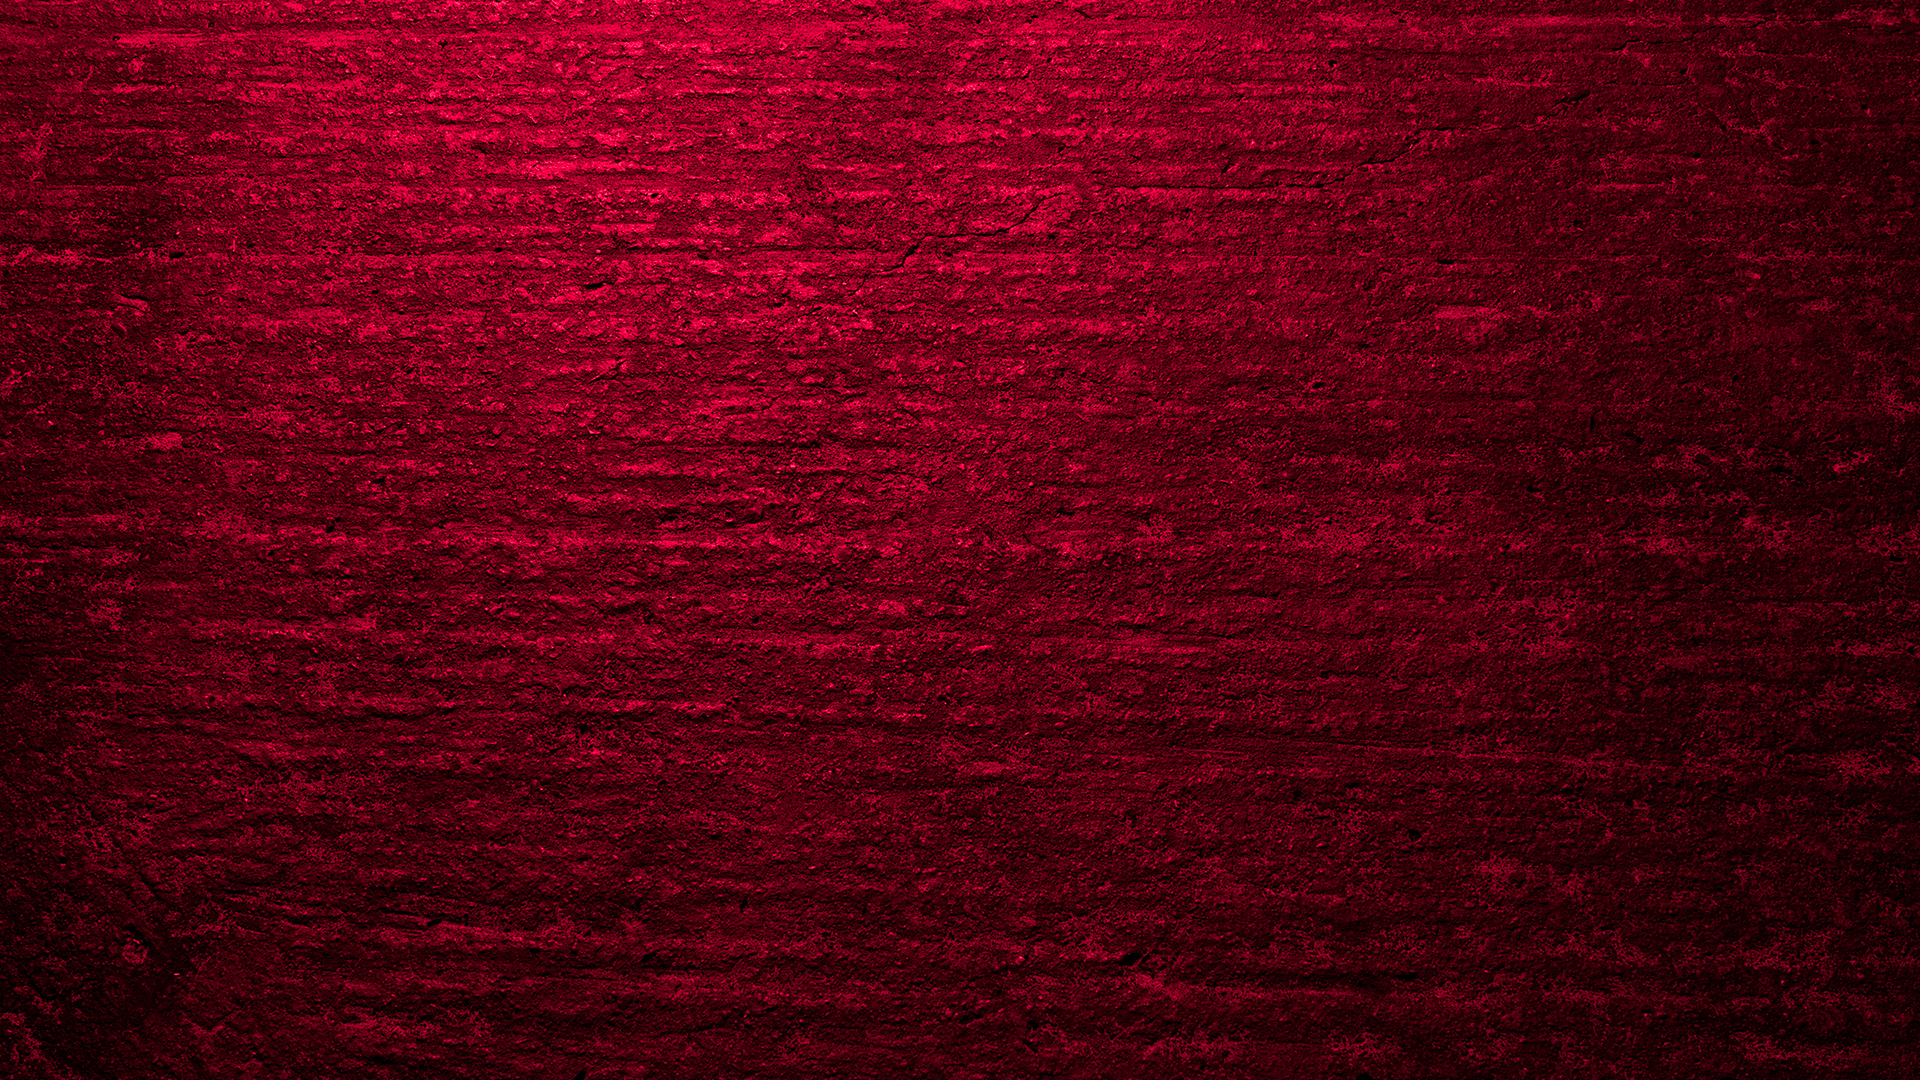 Red Grunge Concrete Texture Hd 1920 X 1080p - Red Grunge Concrete Texture Hd , HD Wallpaper & Backgrounds